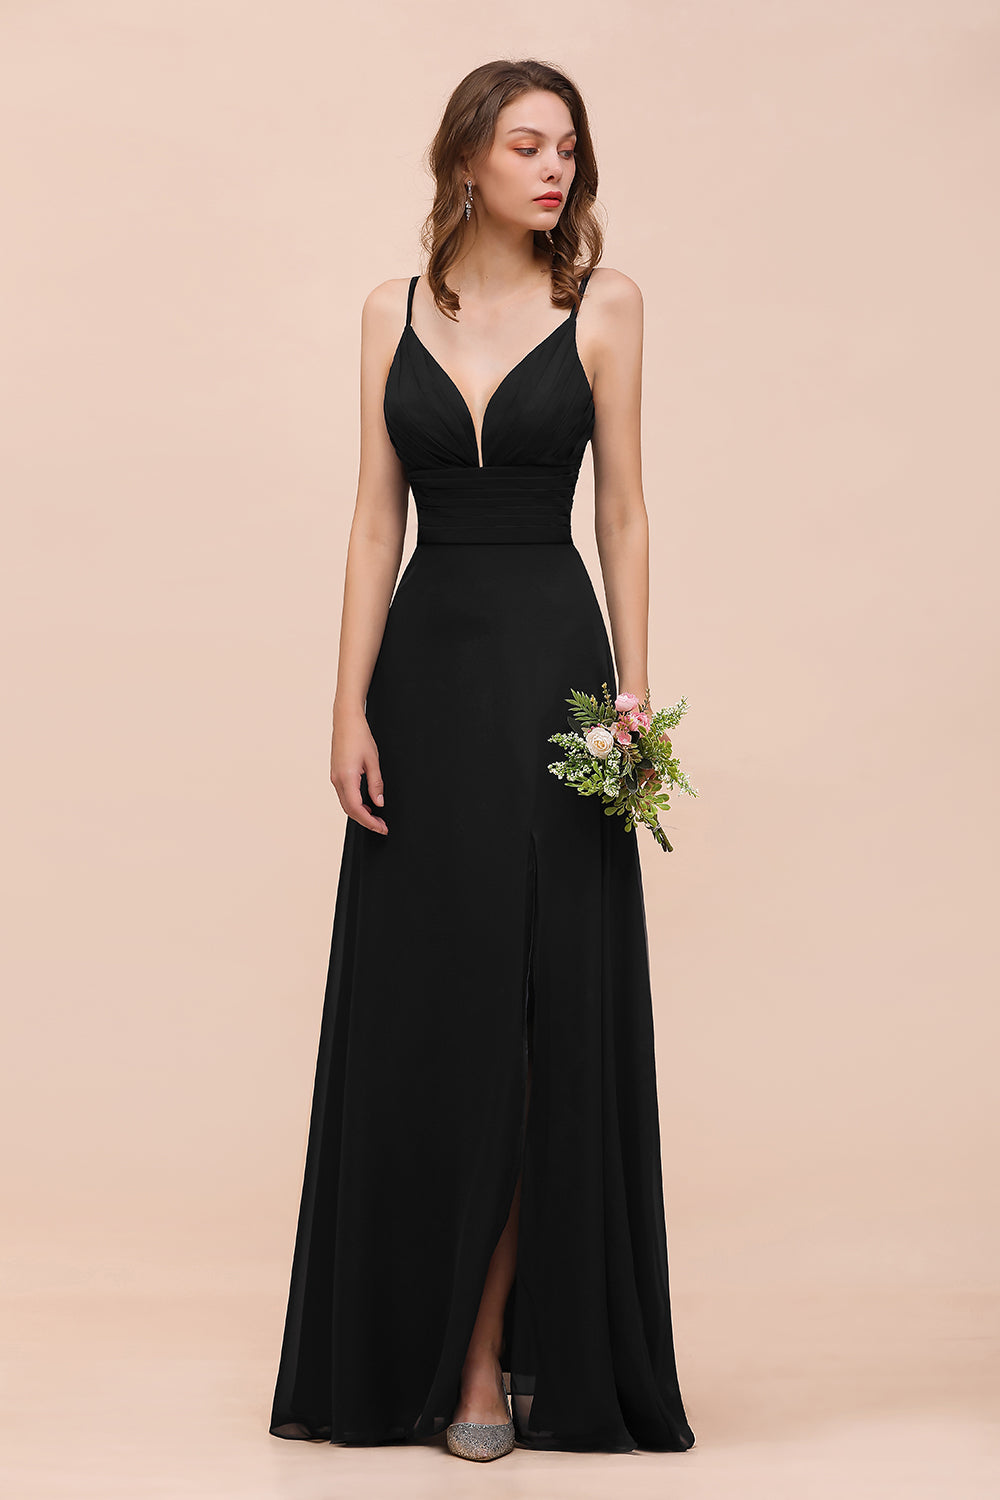 Bestellen Sie Schwarze Brautjungfernkleider Lang Günstig online bei babyonlinedress.de. Kleid für Brautjungfern maß geschneidert bekommen.